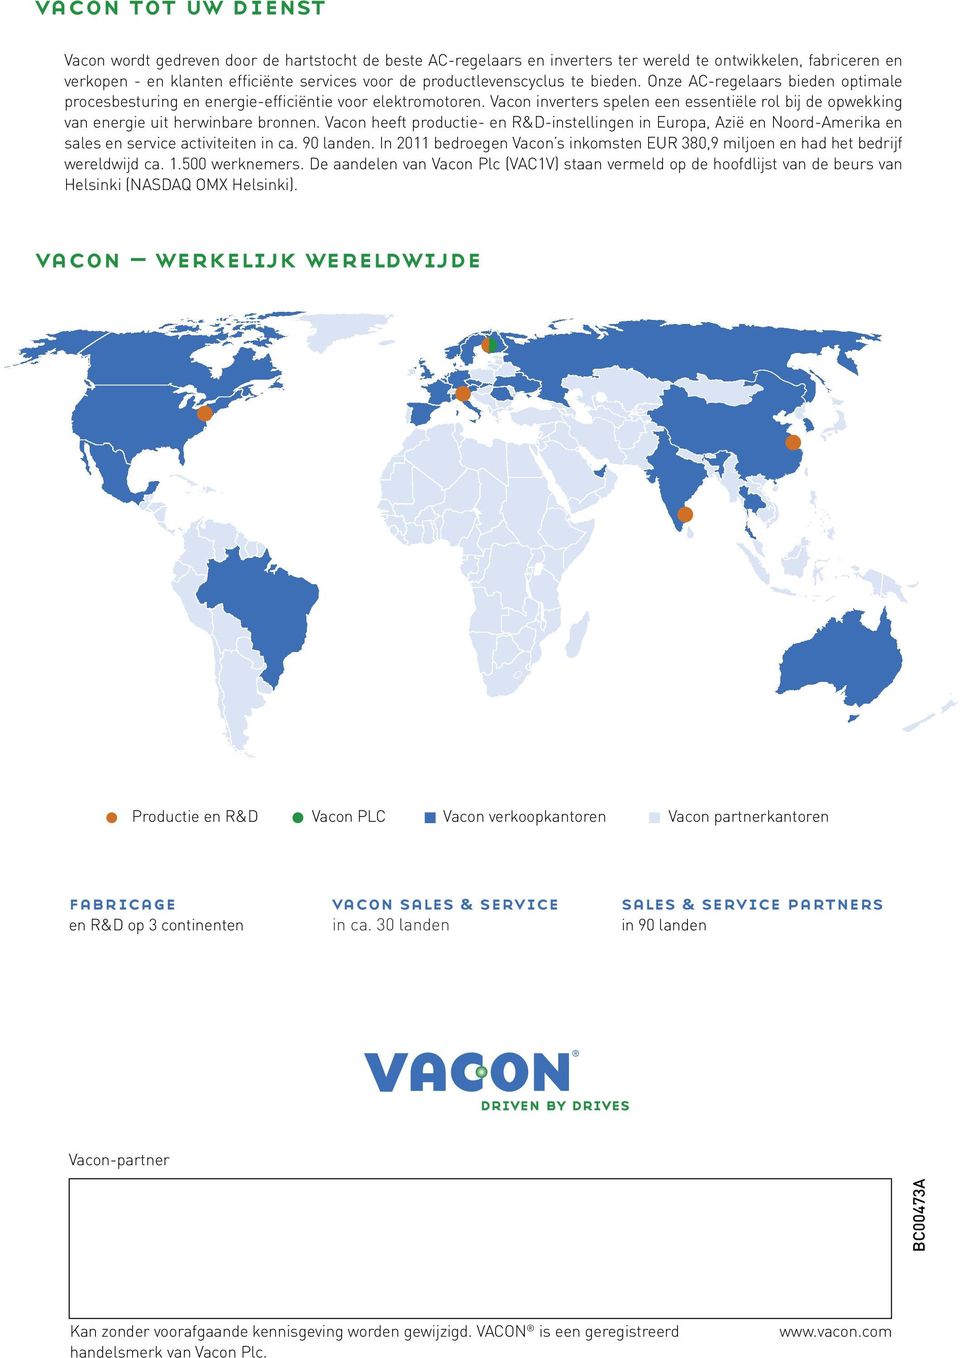 Vacon inverters spelen een essentiële rol bij de opwekking van energie uit herwinbare bronnen.